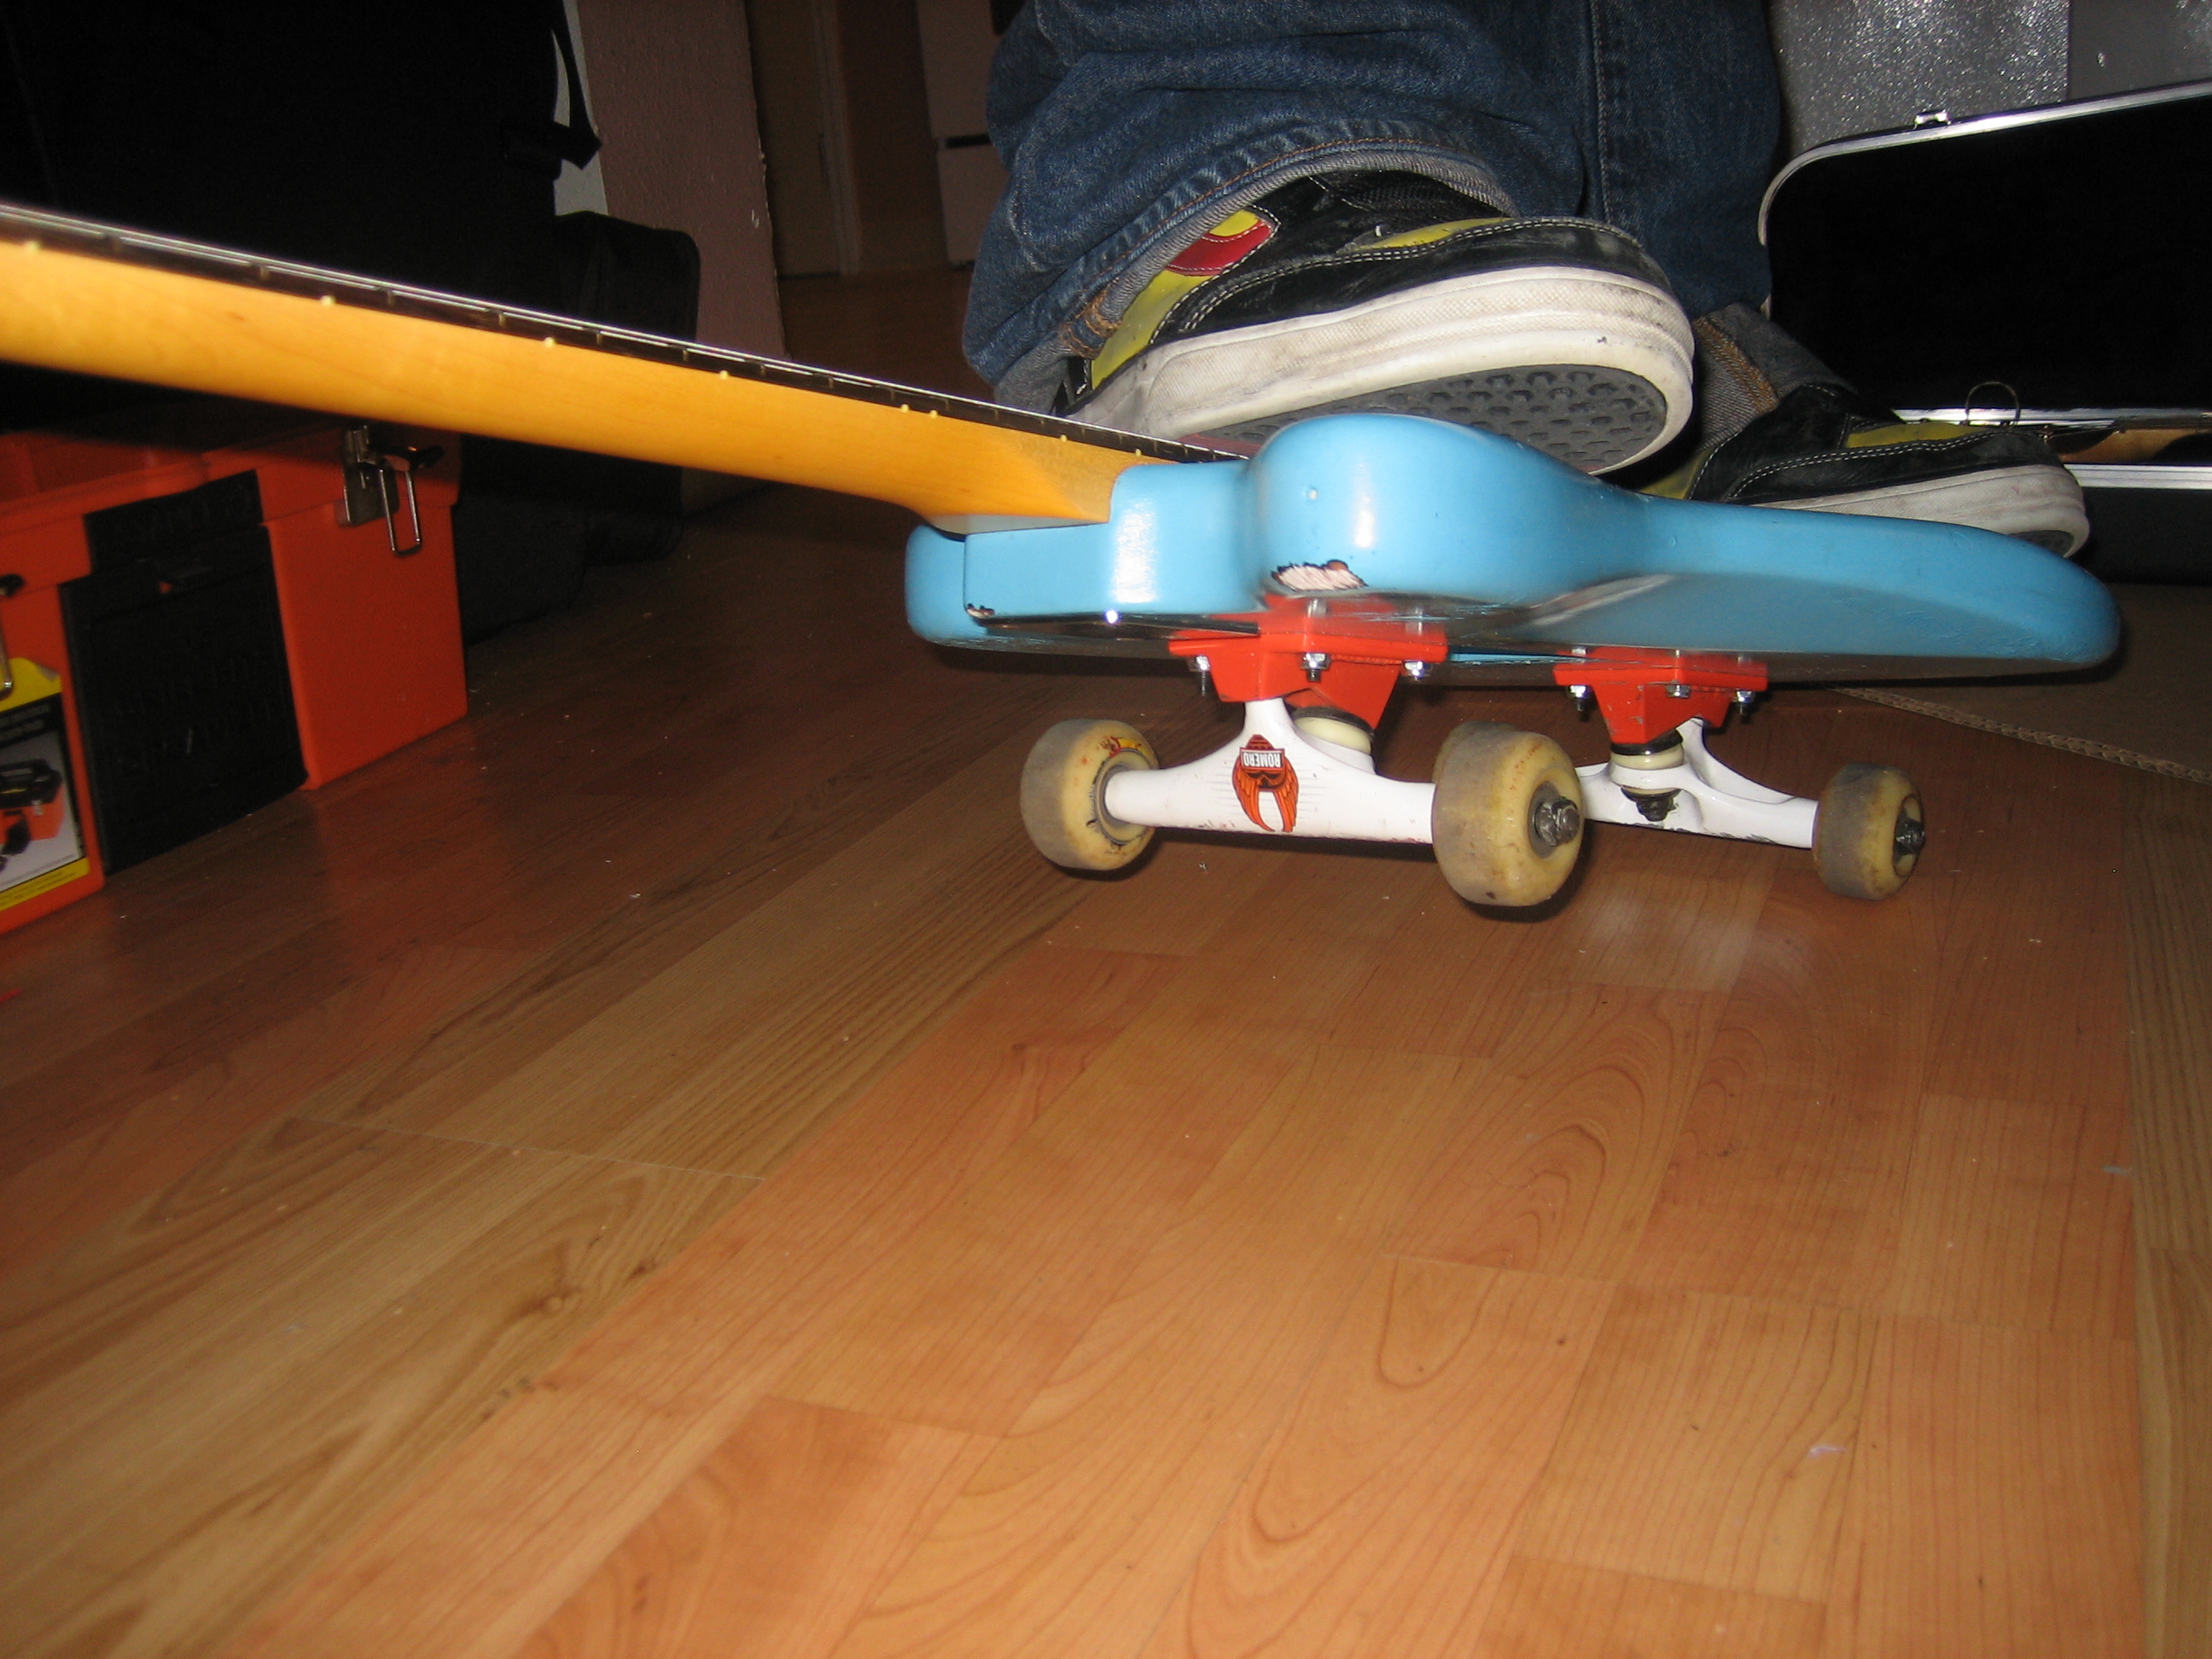 The Skateboard Guitar (Skatar)